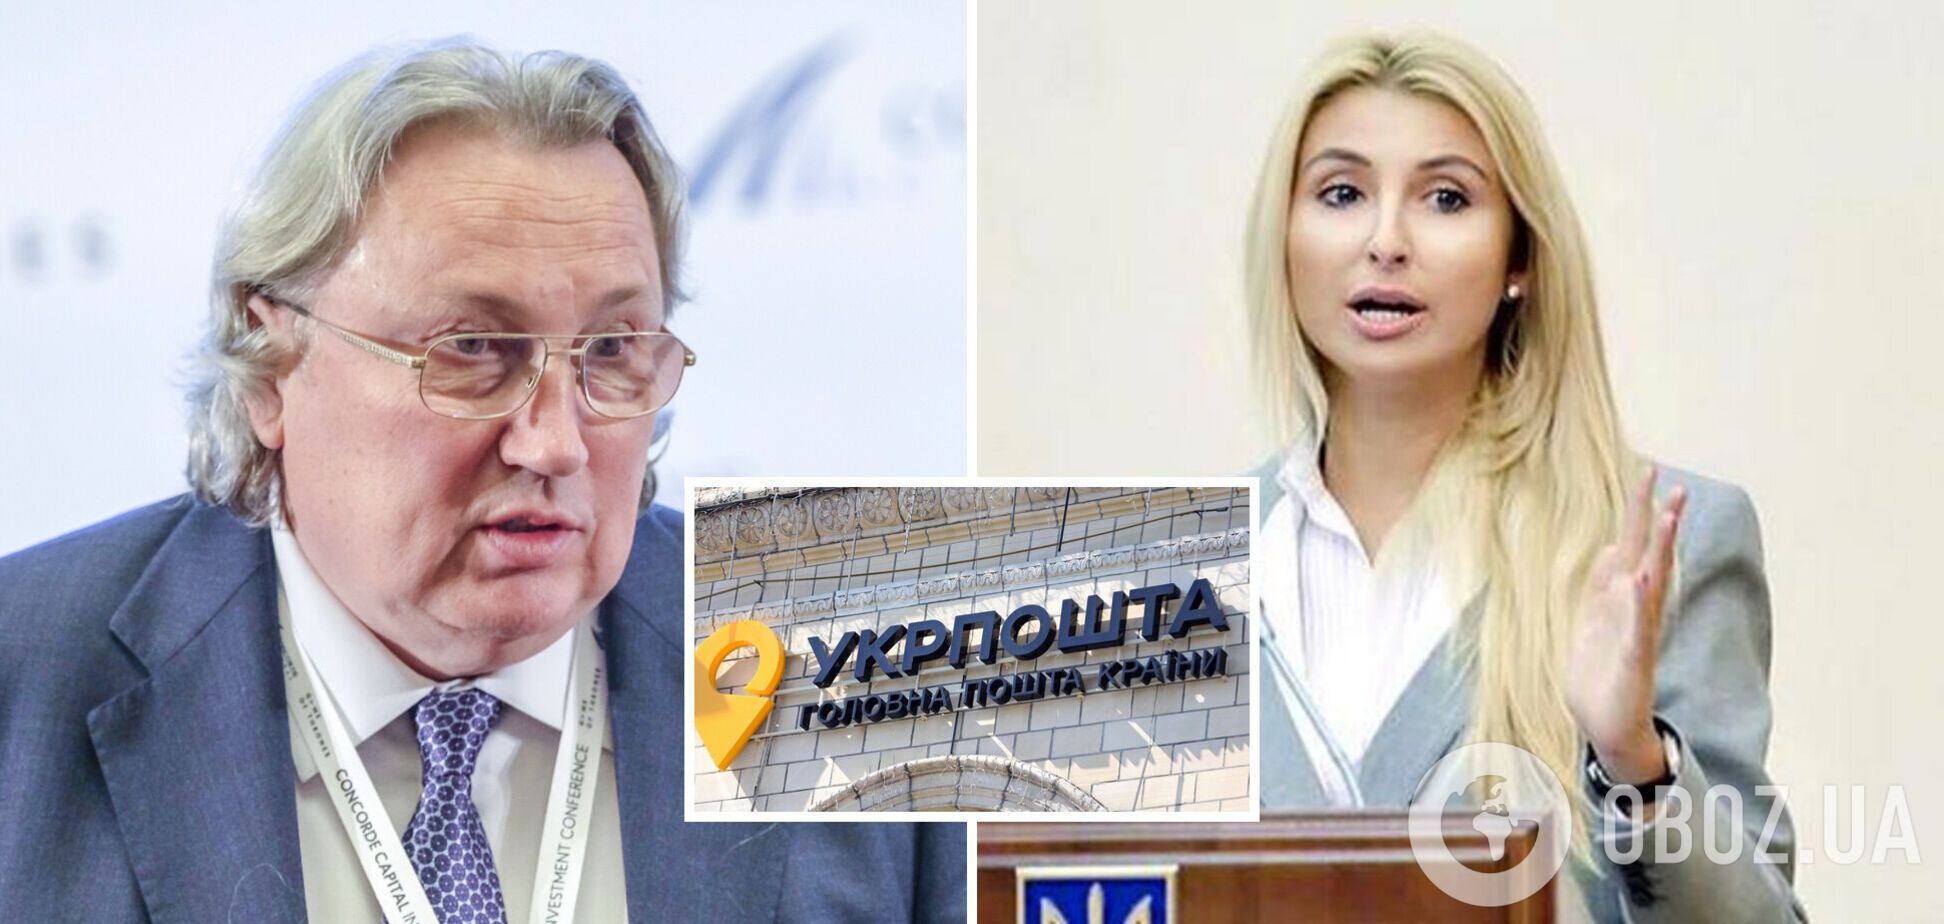 Мітюков перестав був радником Януковича лише після втечі останнього